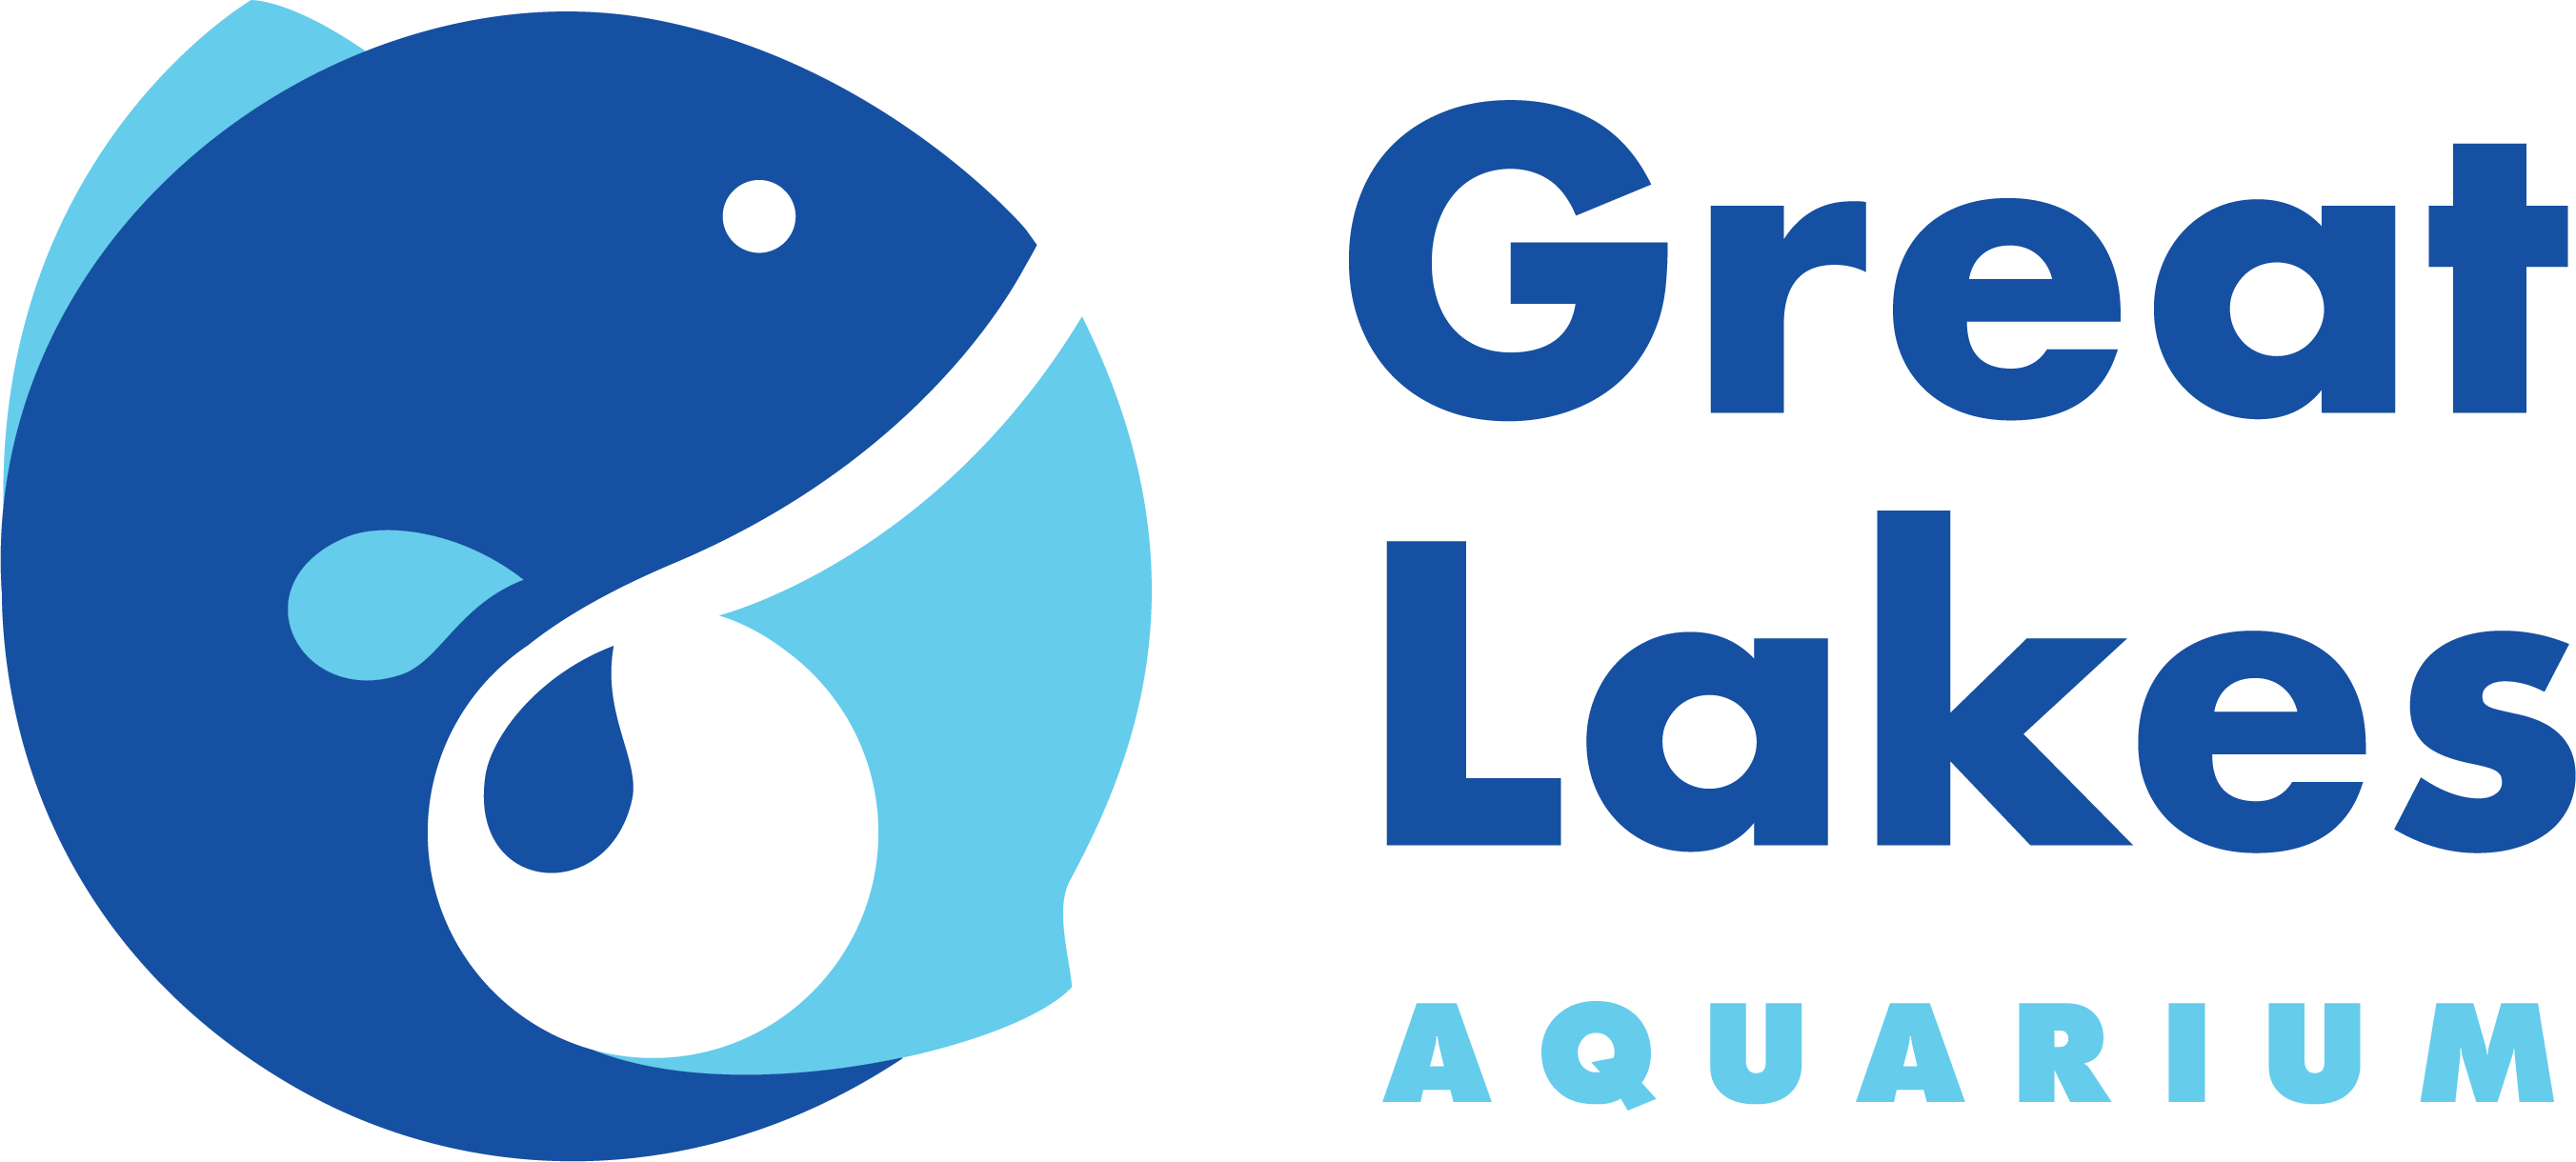 The Great Lakes Aquarium logo